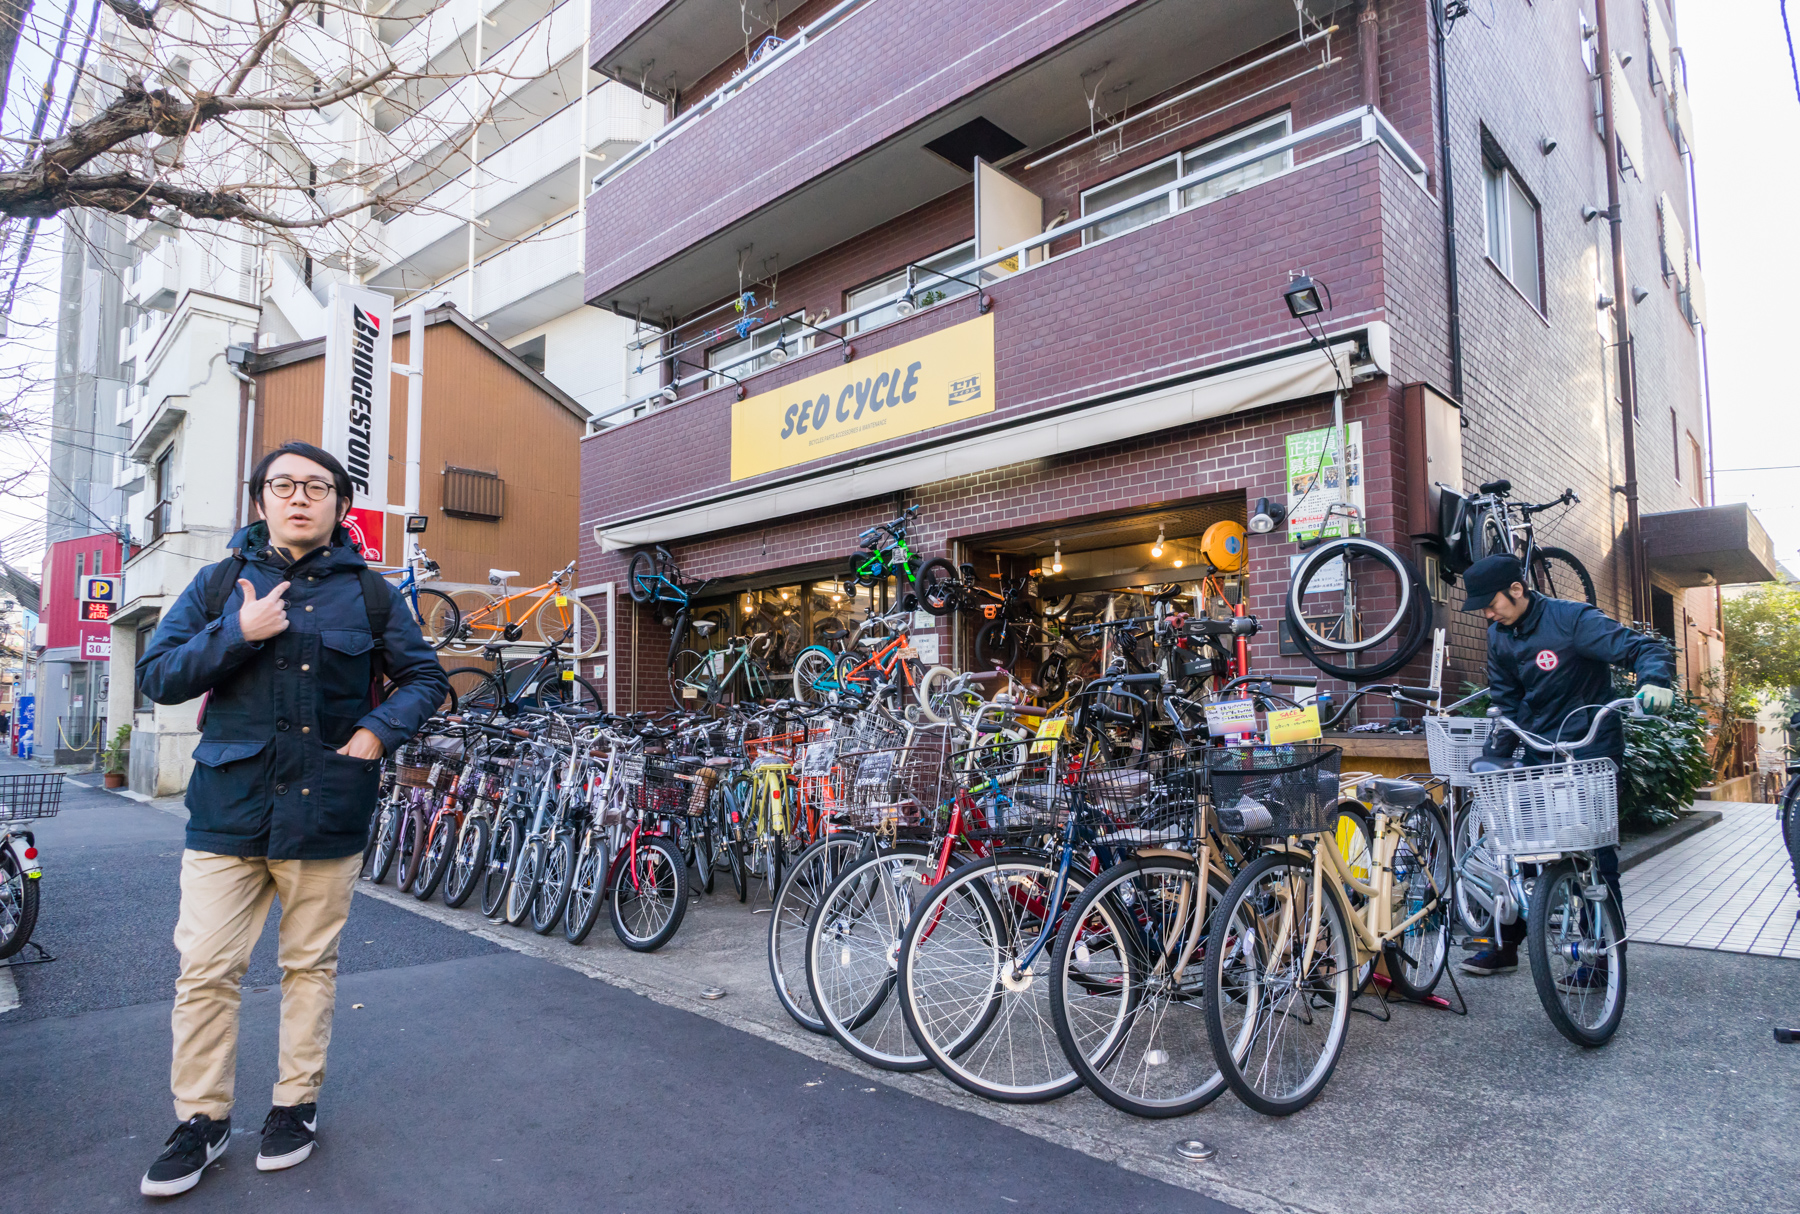 自転車専門店セオサイクル 中野店で自転車のメンテナンスをしてもらった 中野新橋らへんに住もう